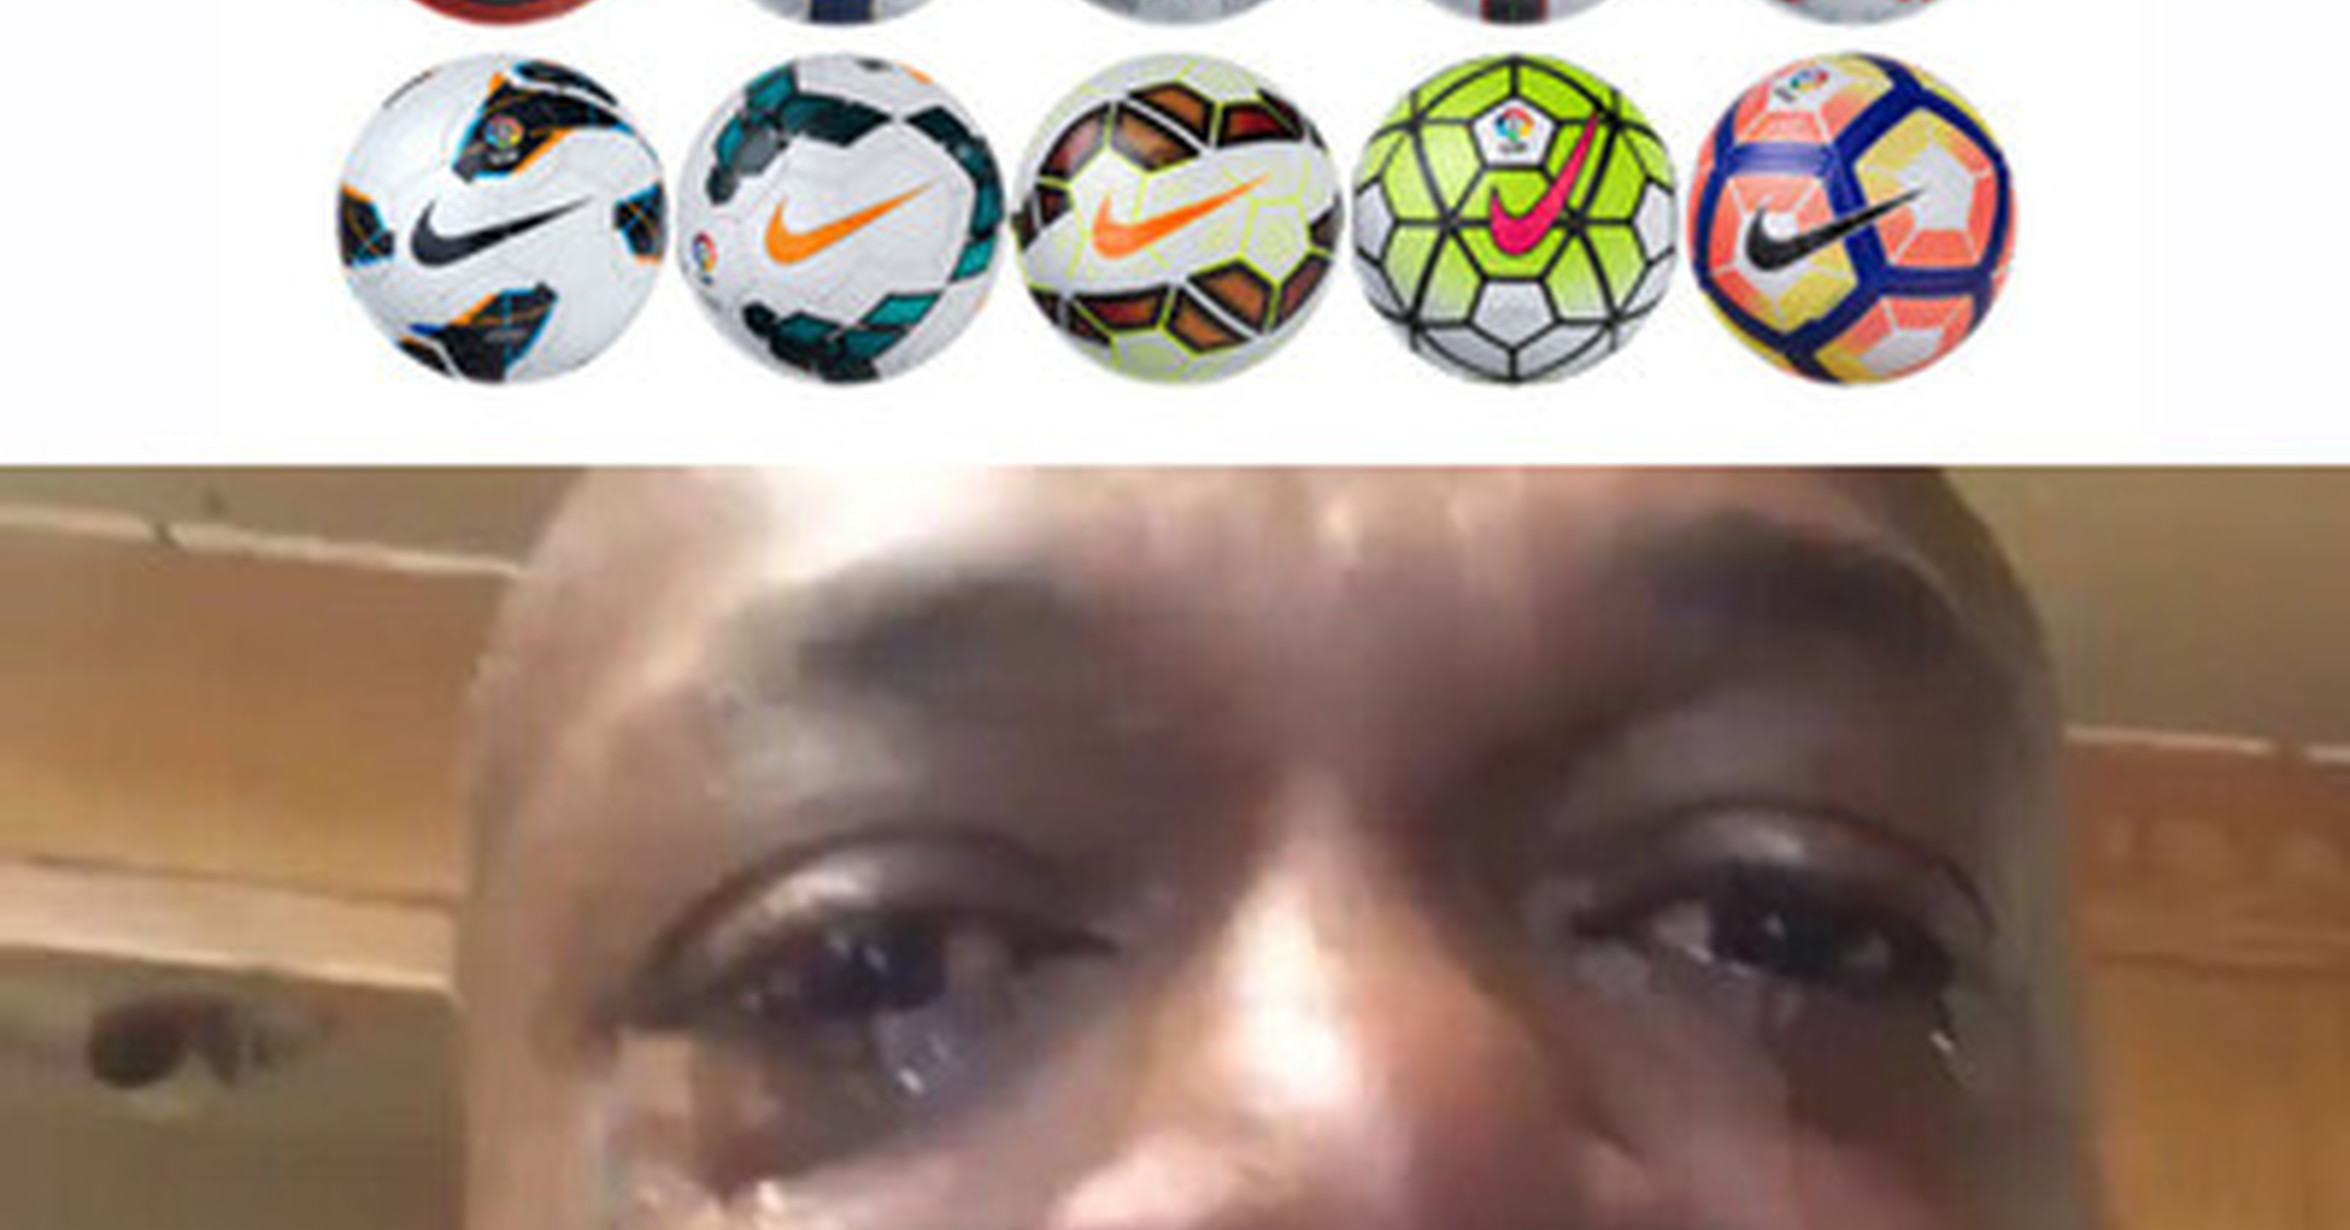 Adiós a los míticos balones Nike La Liga, que se pasa a Puma